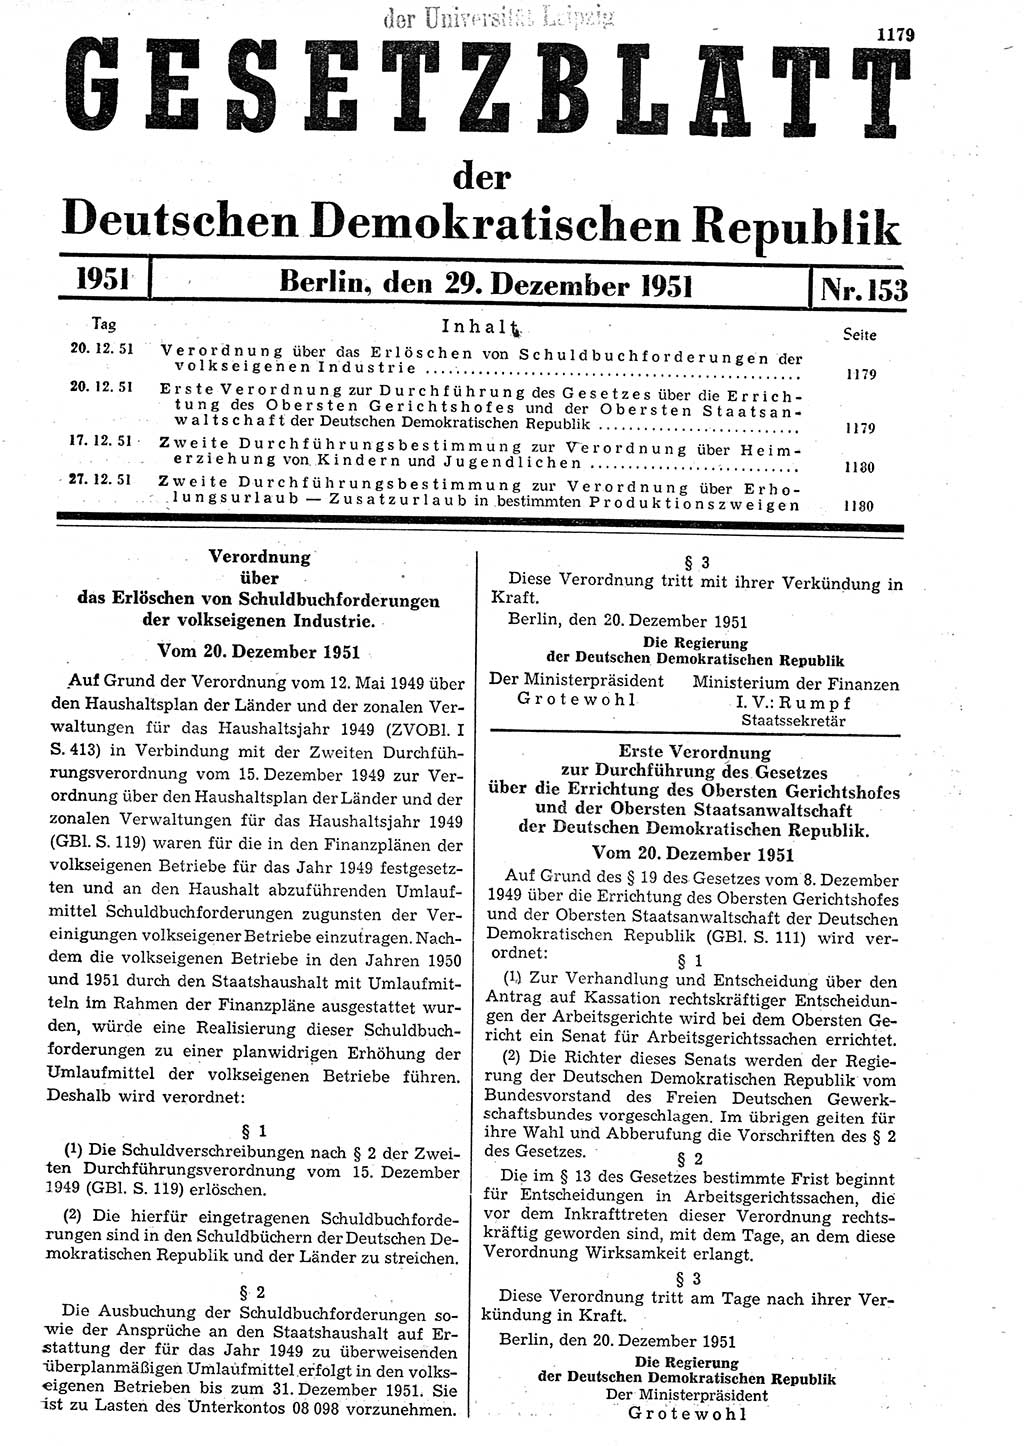 Gesetzblatt (GBl.) der Deutschen Demokratischen Republik (DDR) 1951, Seite 1179 (GBl. DDR 1951, S. 1179)